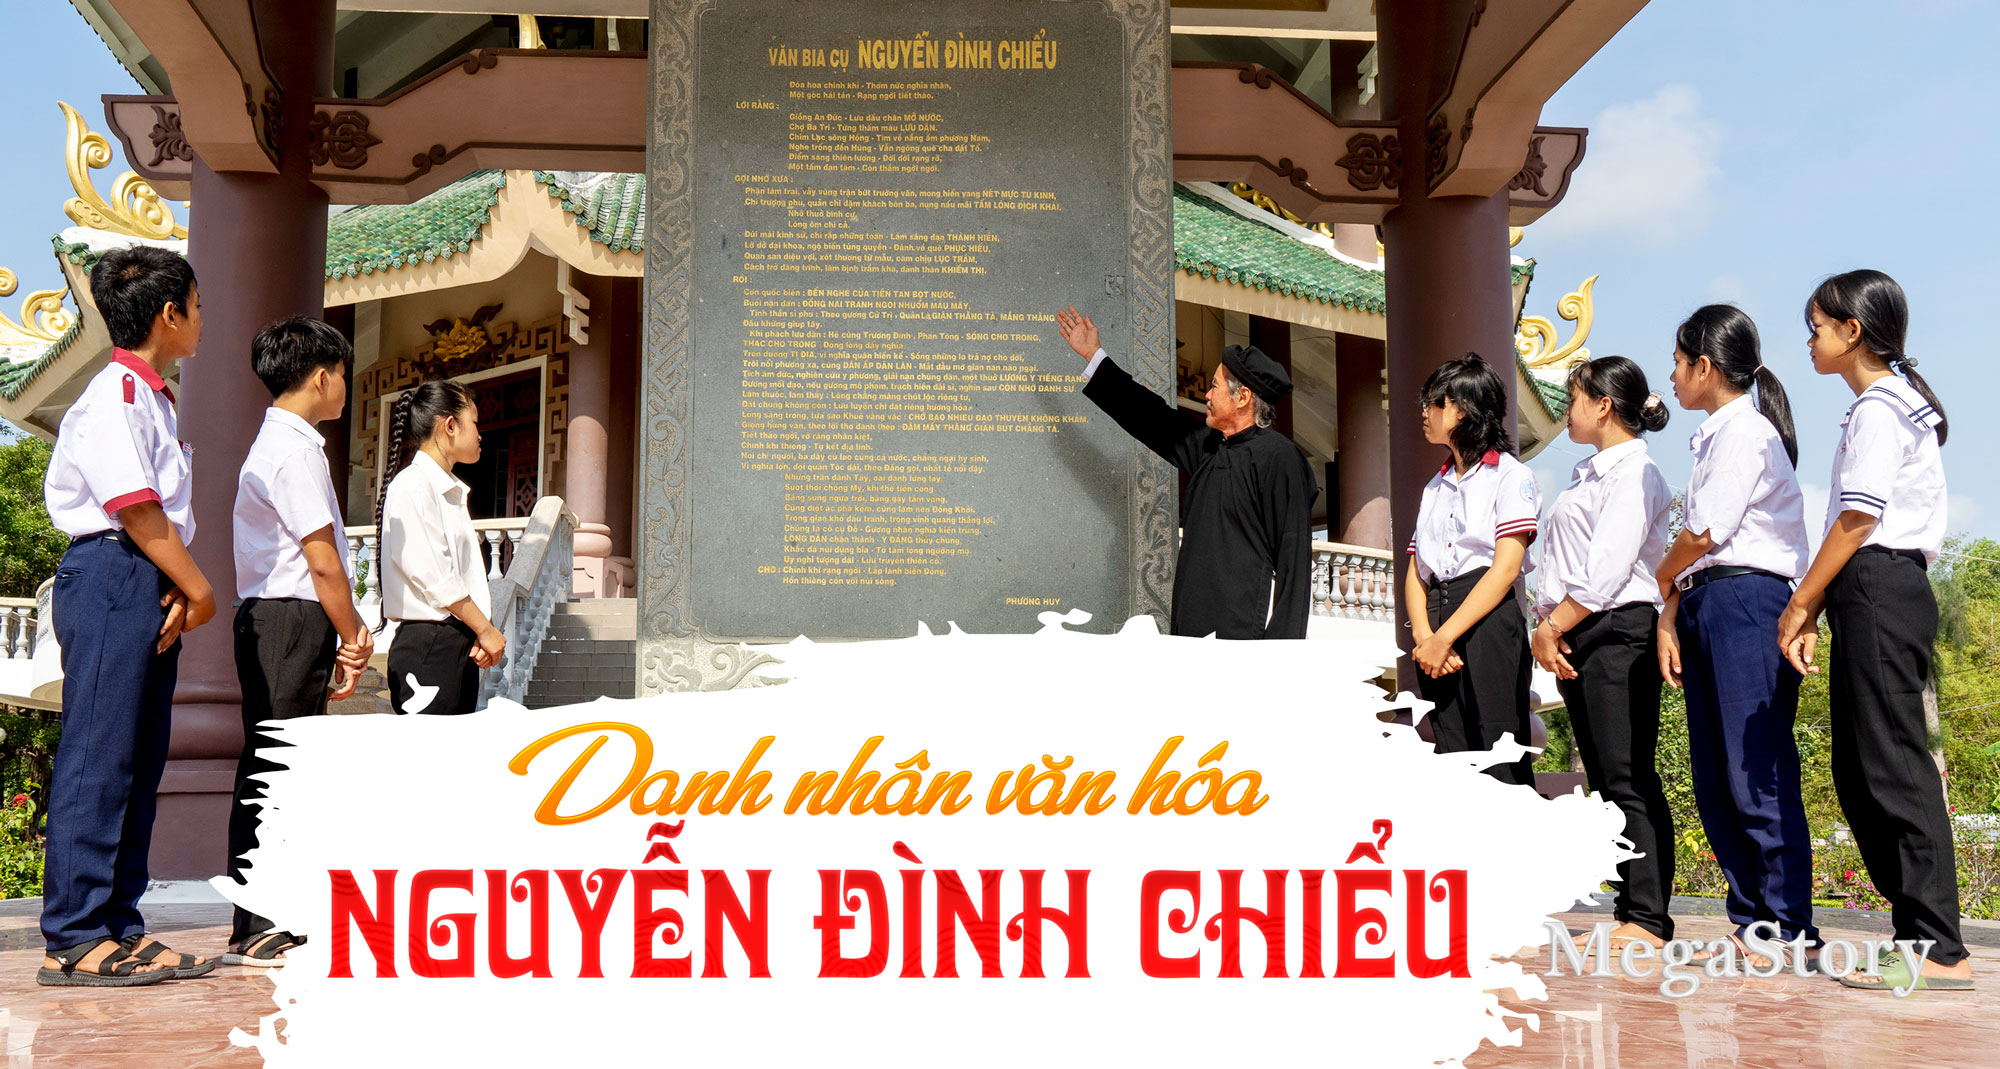 anh-bia 140522 ve cuoc doi Nguyen Dinh Chieu - Van.jpg